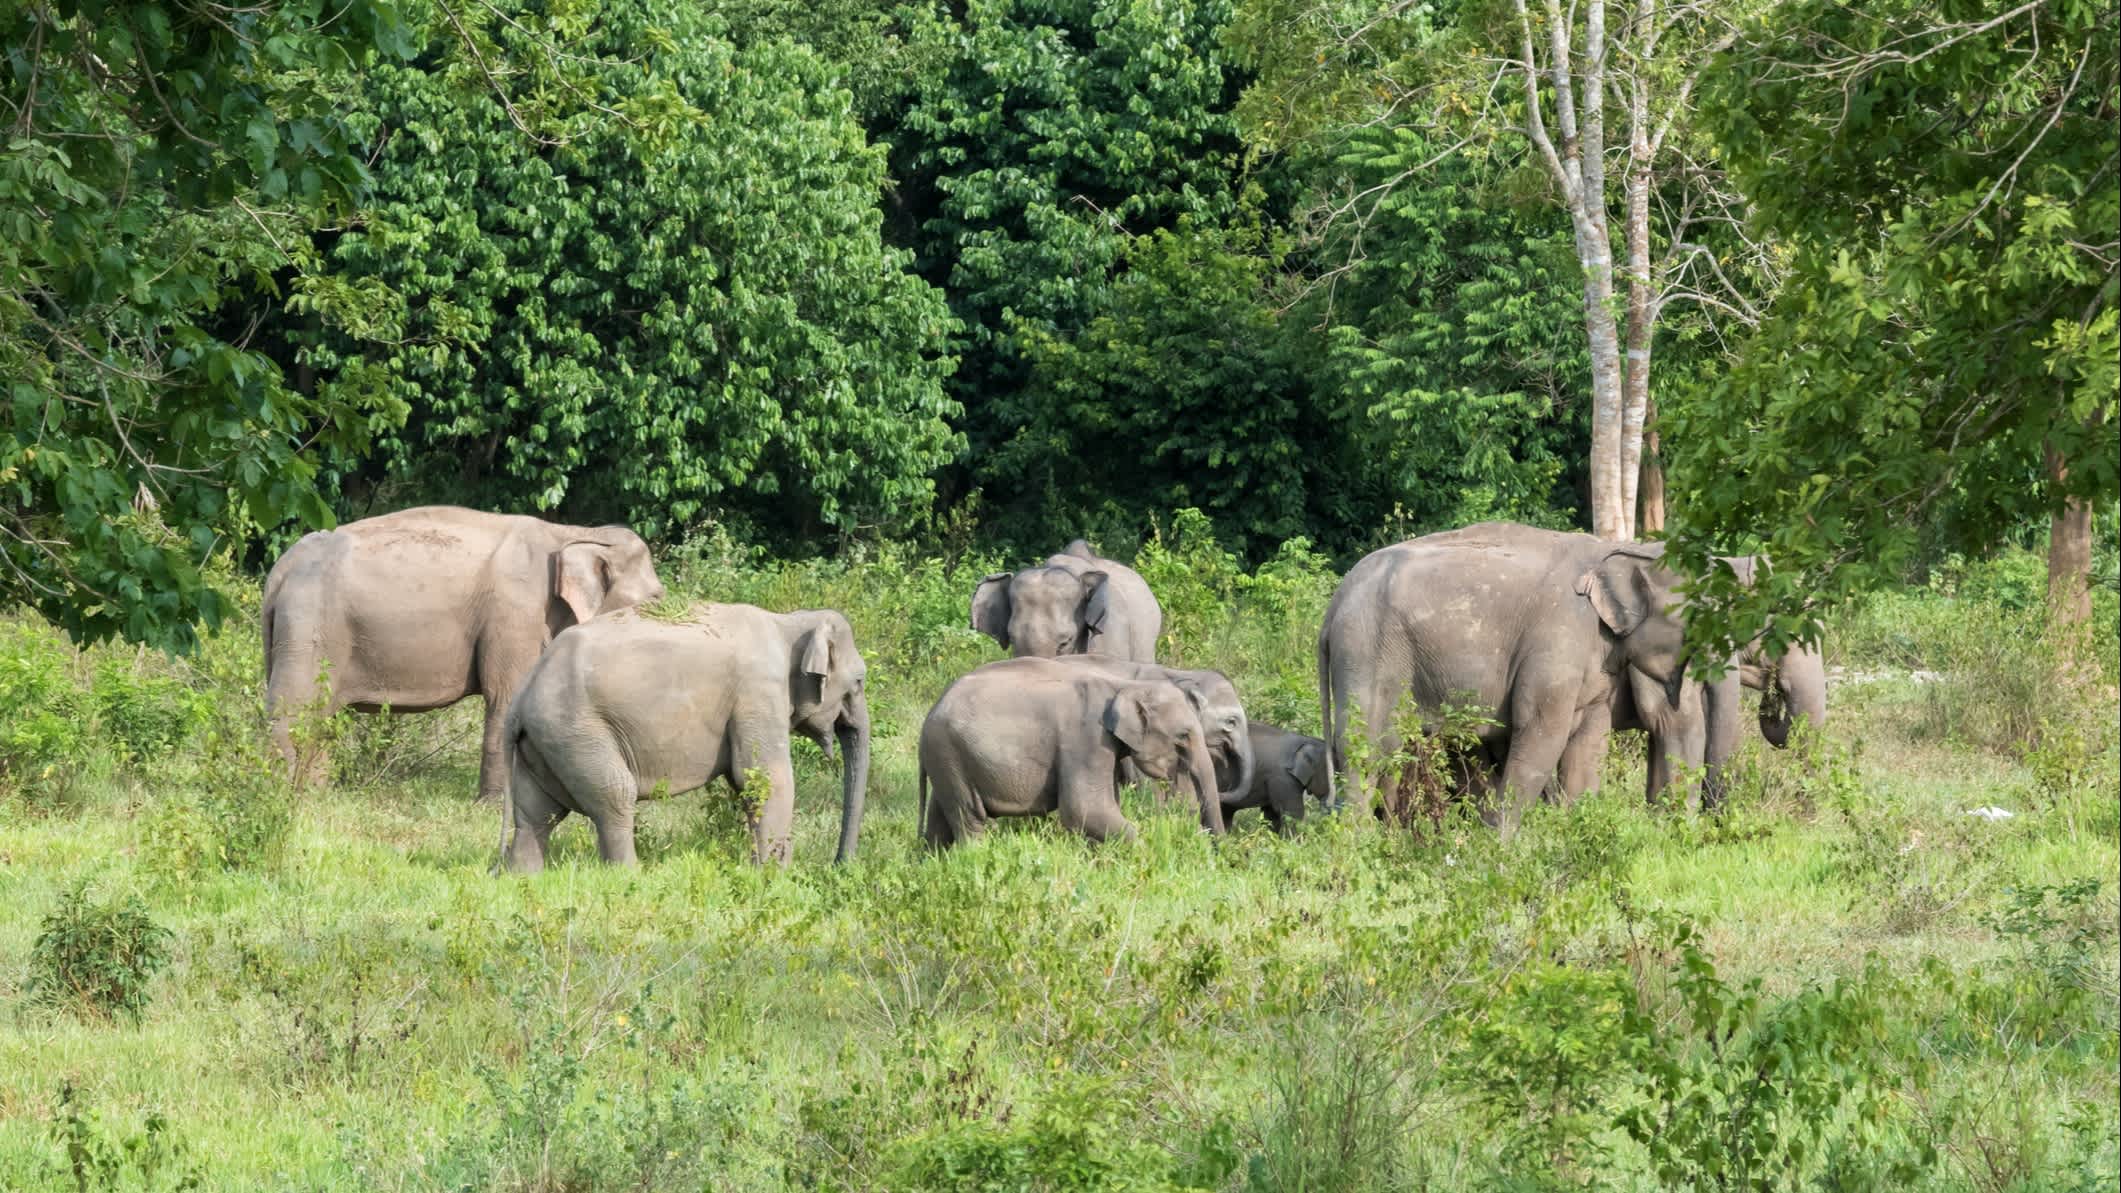 Des éléphants cherchent de l'herbe pour se nourrir dans le parc national de Kui Buri, en Thaïlande.